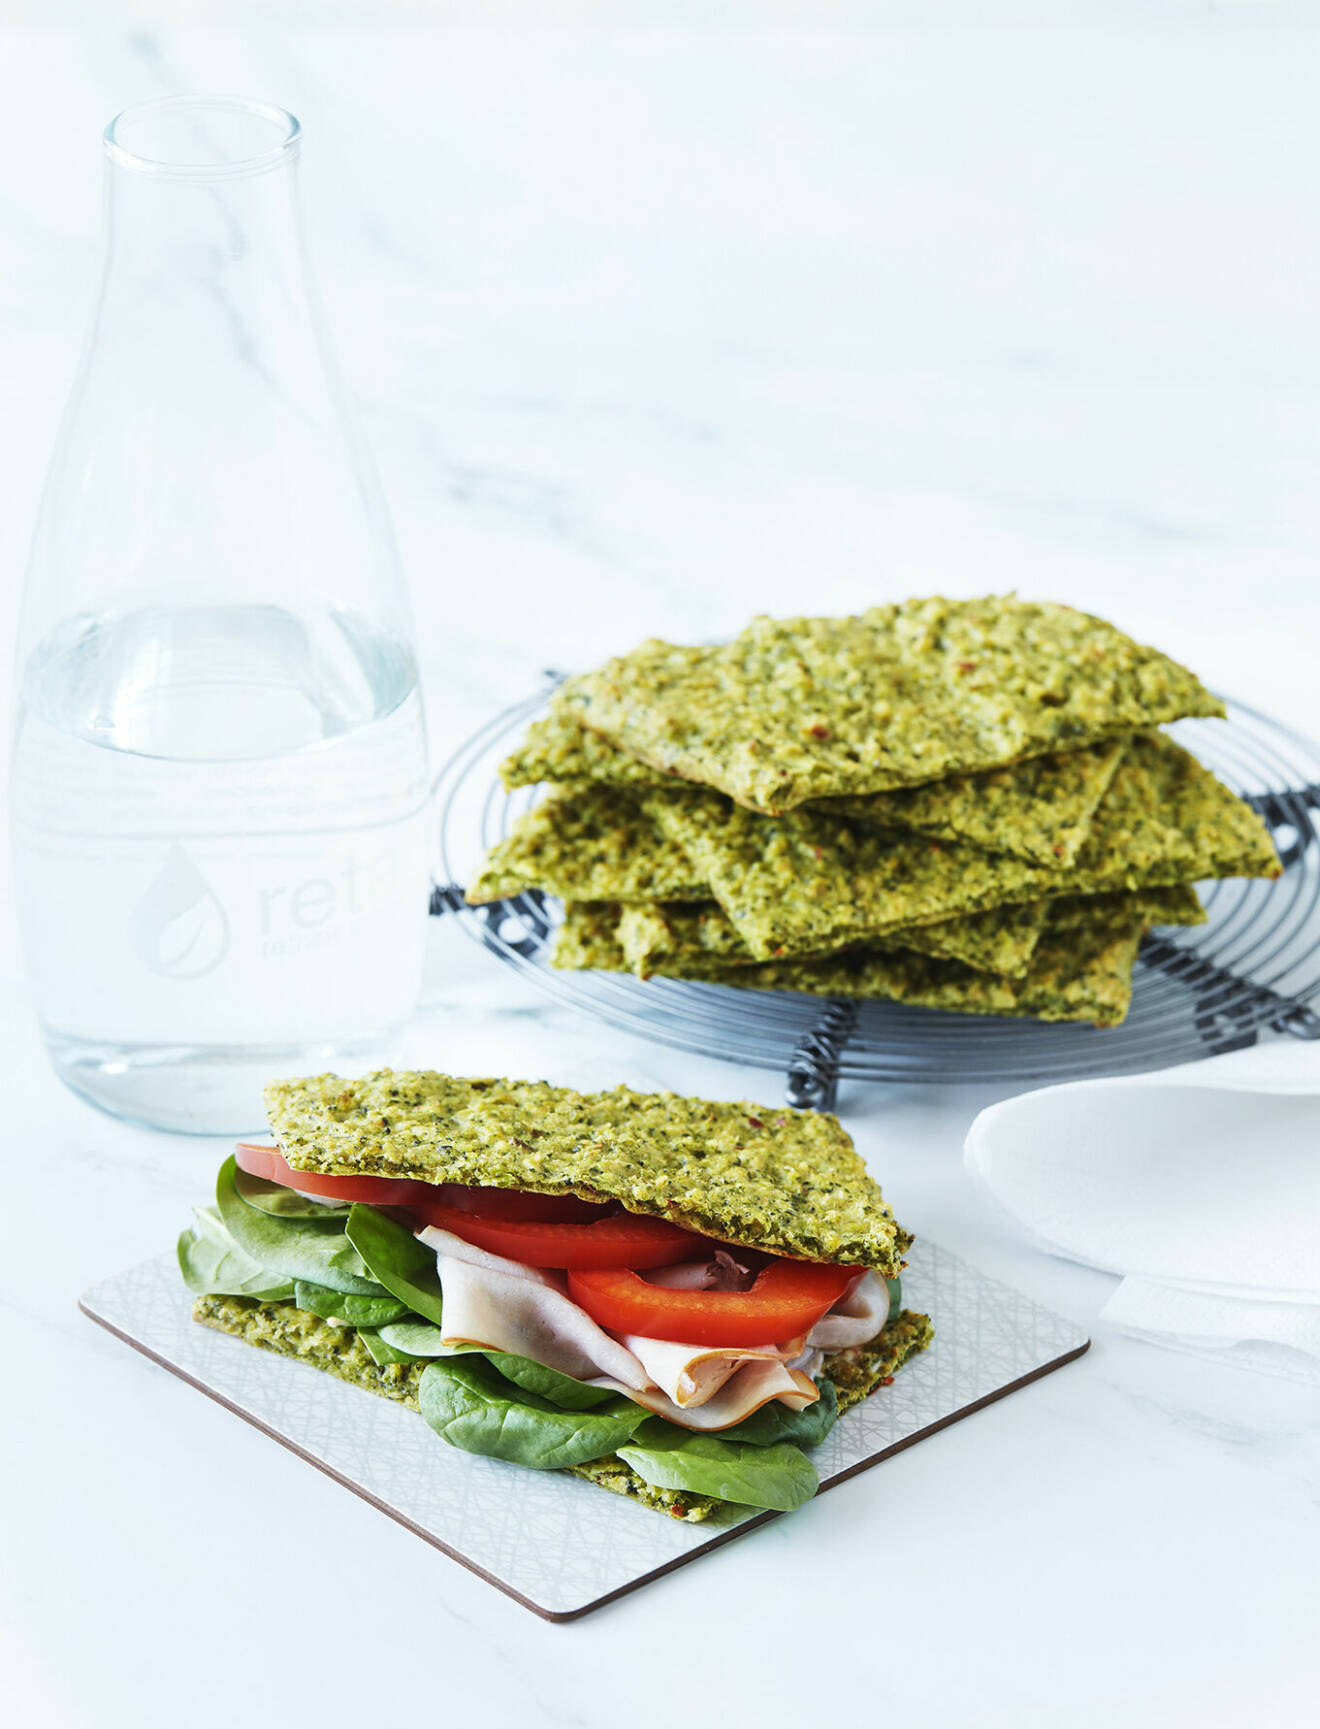 Baka ditt eget glutenfria smörgåsbröd med broccoli